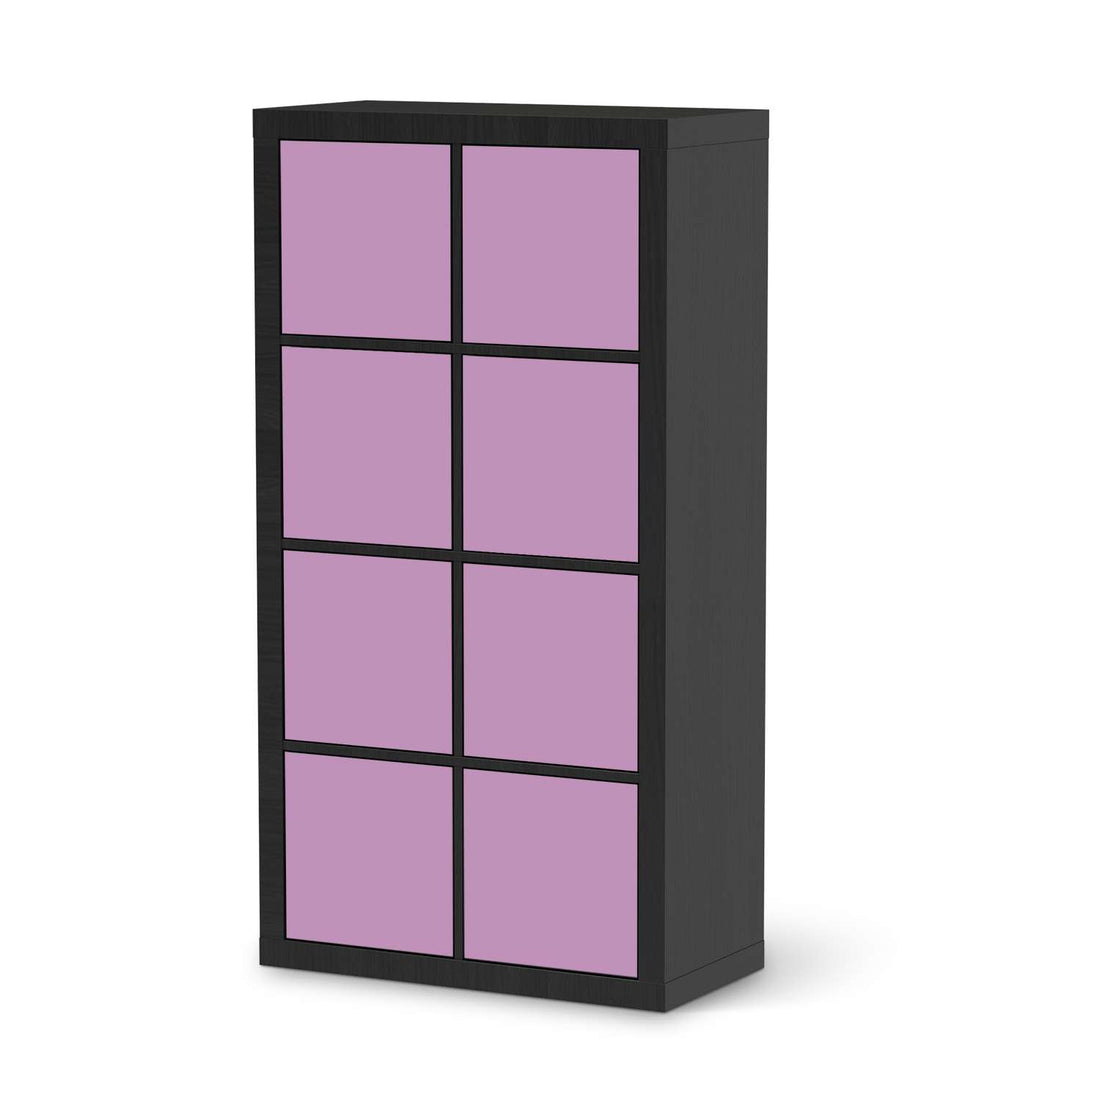 Folie für Möbel Flieder Light - IKEA Kallax Regal 8 Türen - schwarz